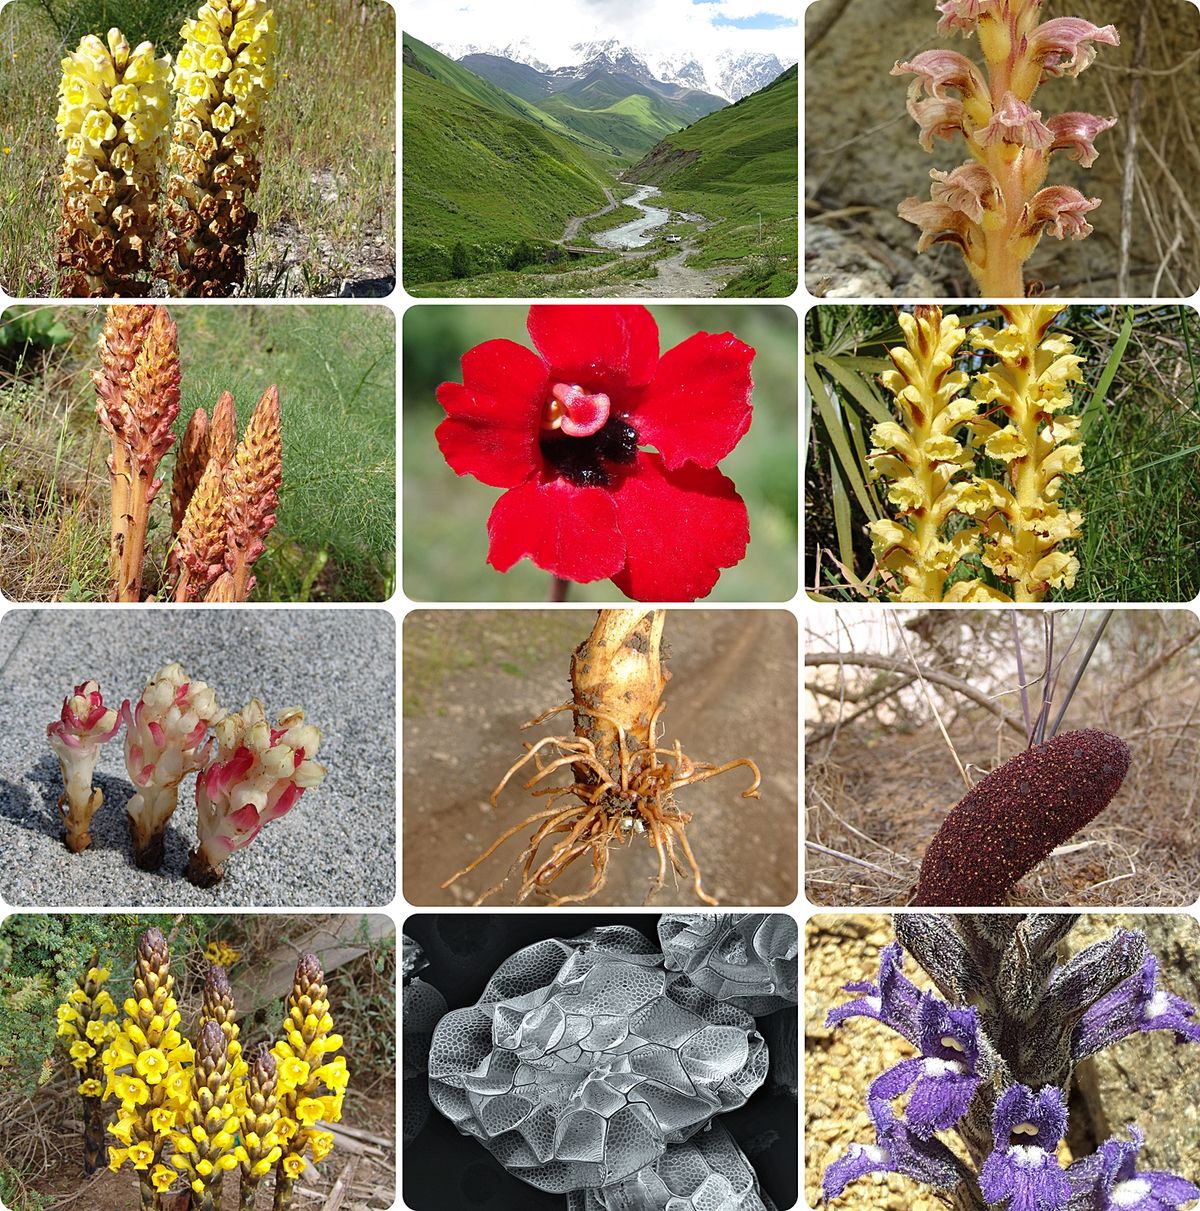 mozaika zdjęć roślin z Centrum Badań i Ochrony Różnorodności Biologicznej